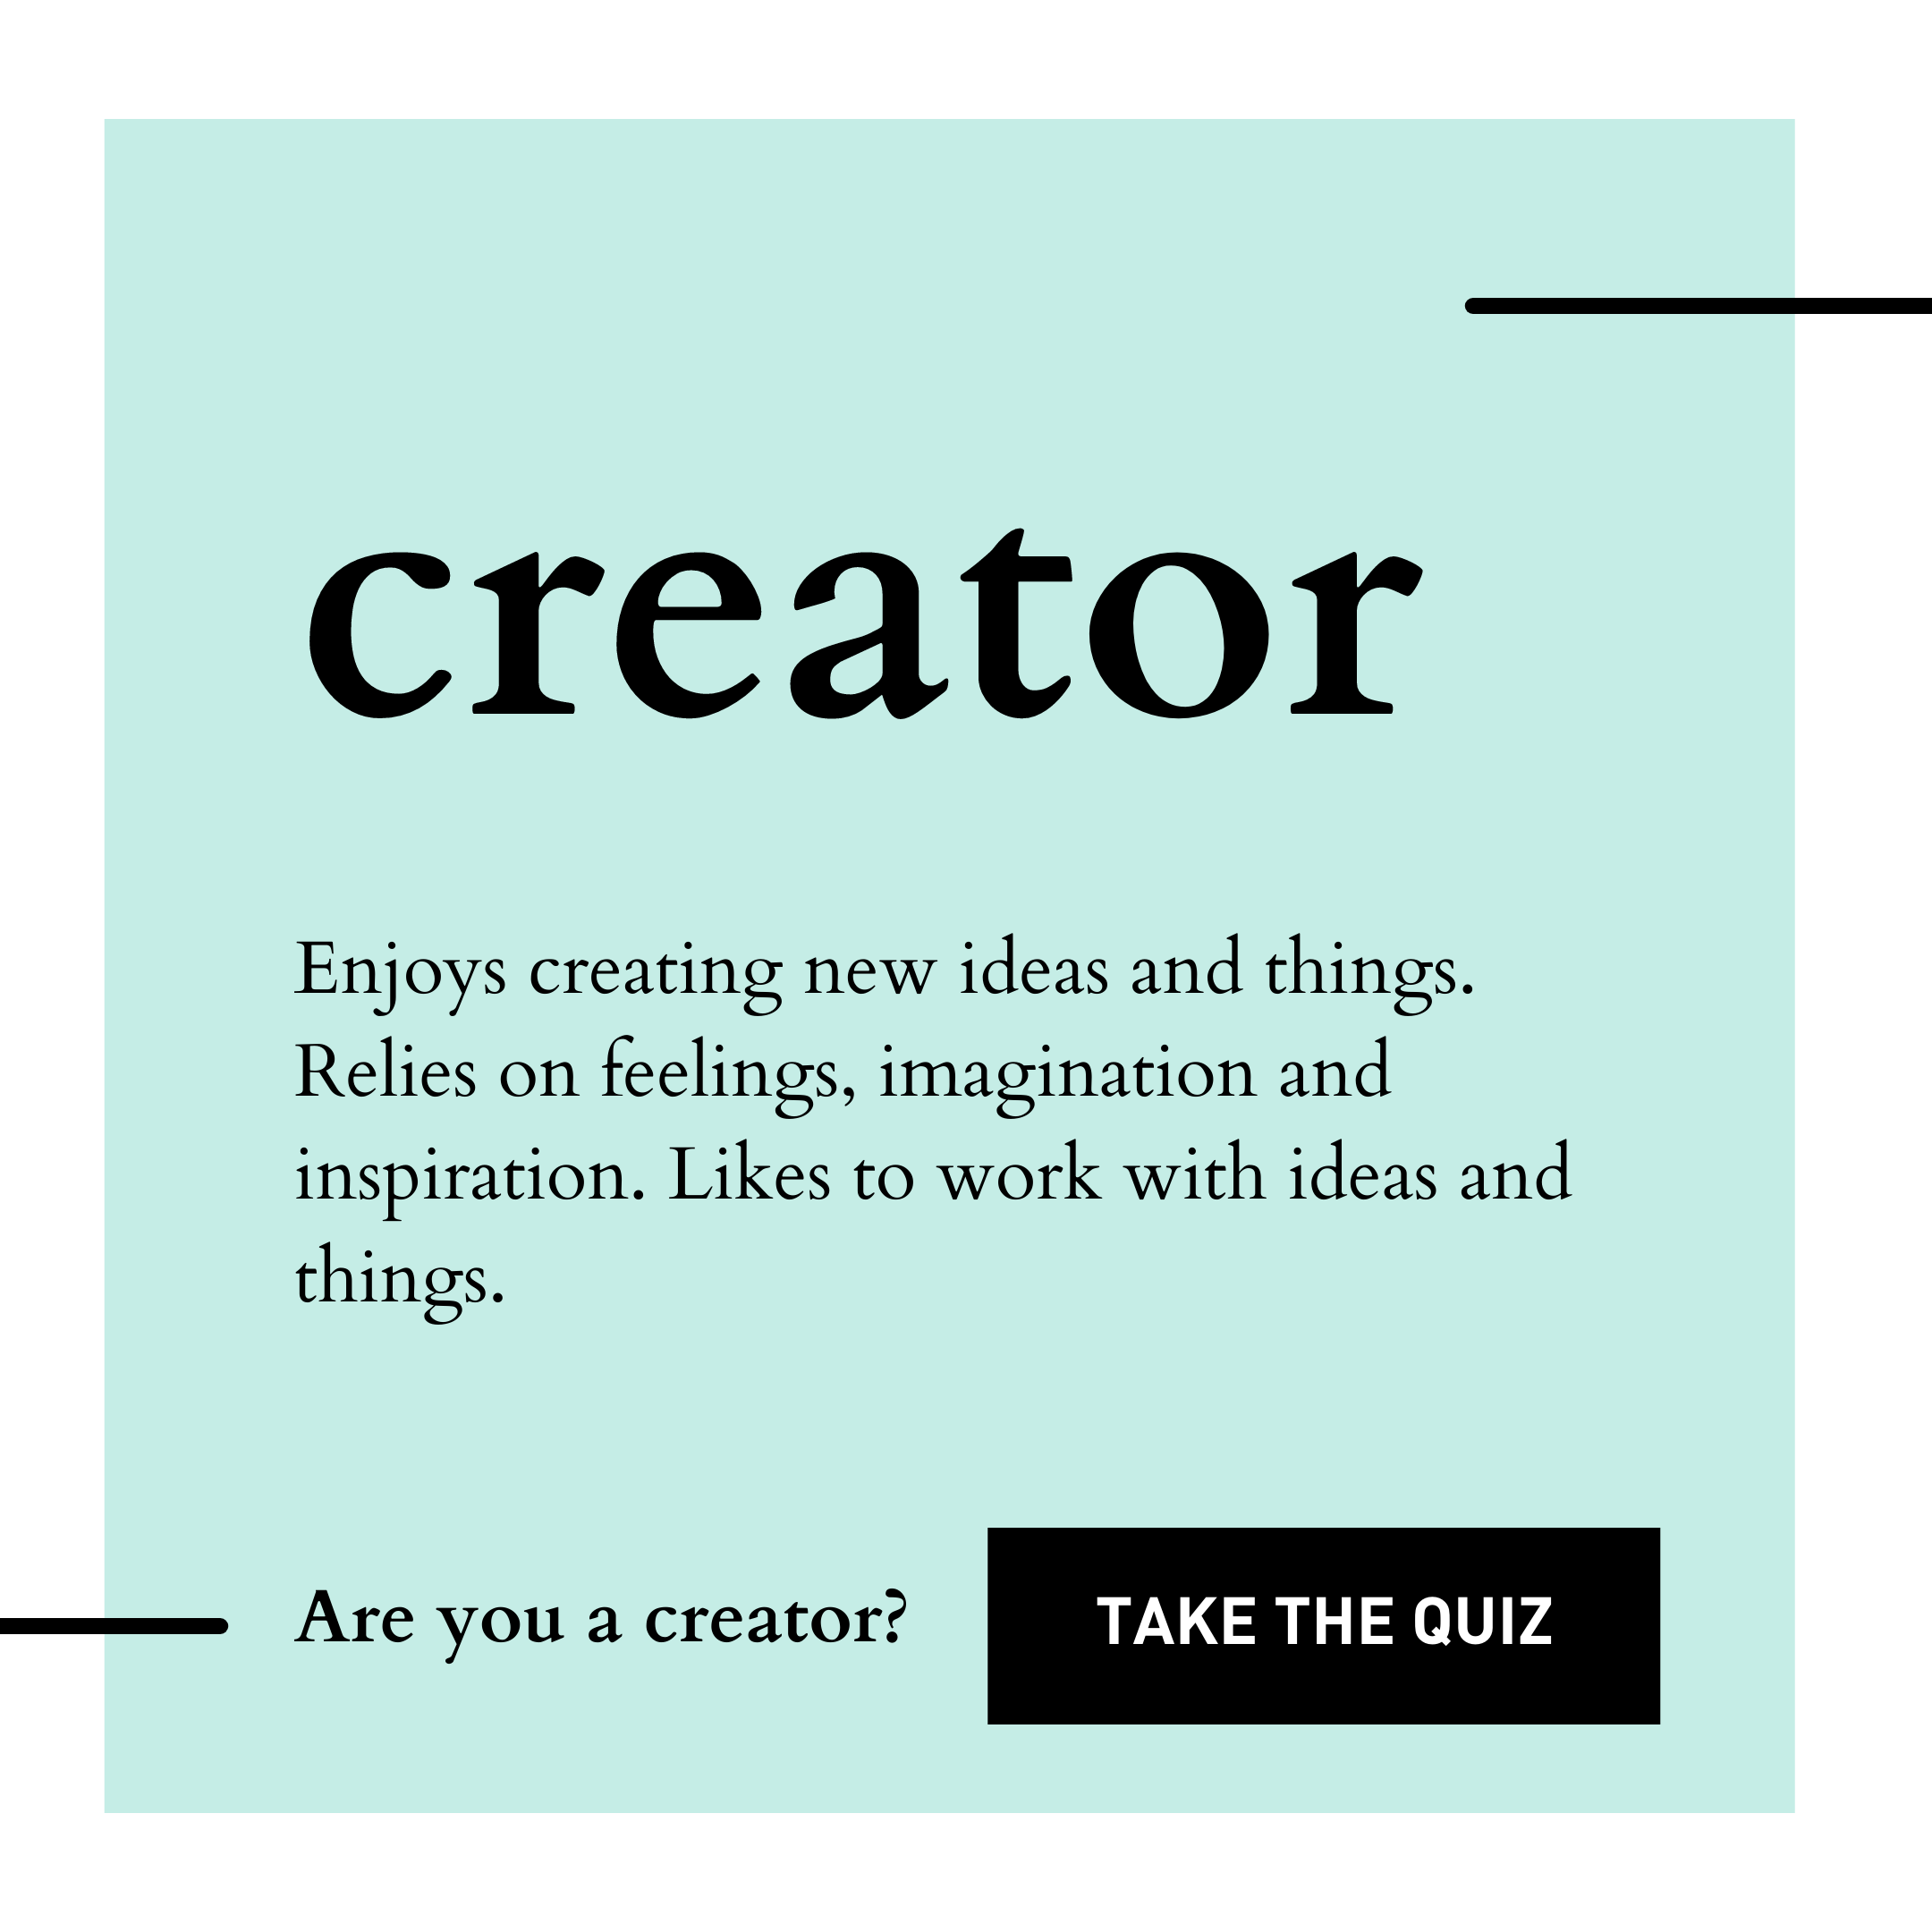 당신은 창조자입니까?